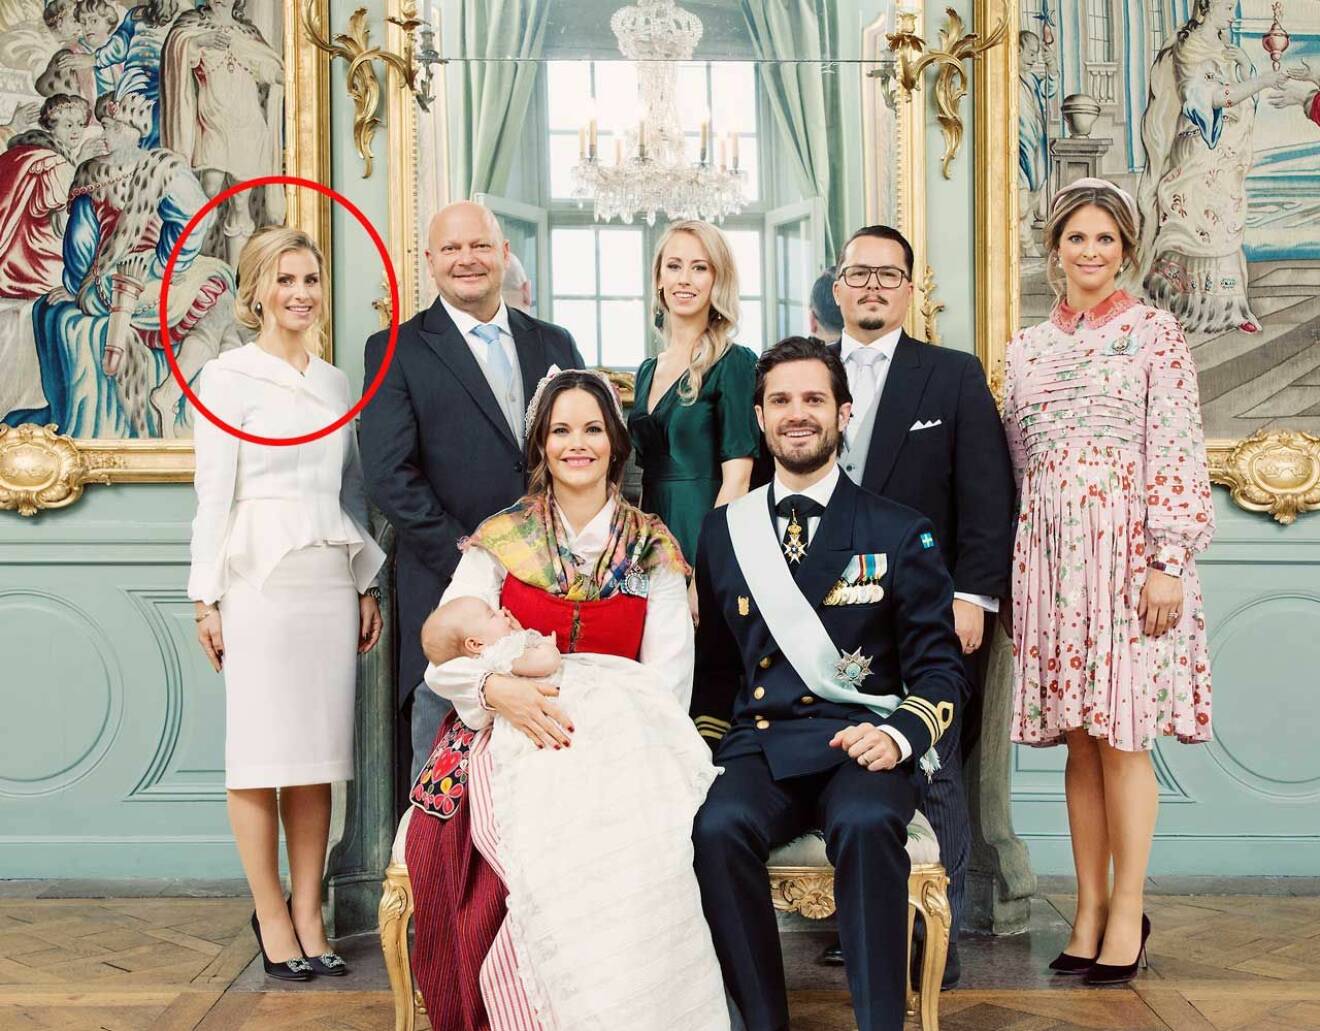 Carolina Pihl på sin gudson prins Gabriels dop, tillsammans med de andra faddrarna Thomas Sommerlath, Sara Hellqvist, Oscar Kylberg och prinsessan Madeleine.